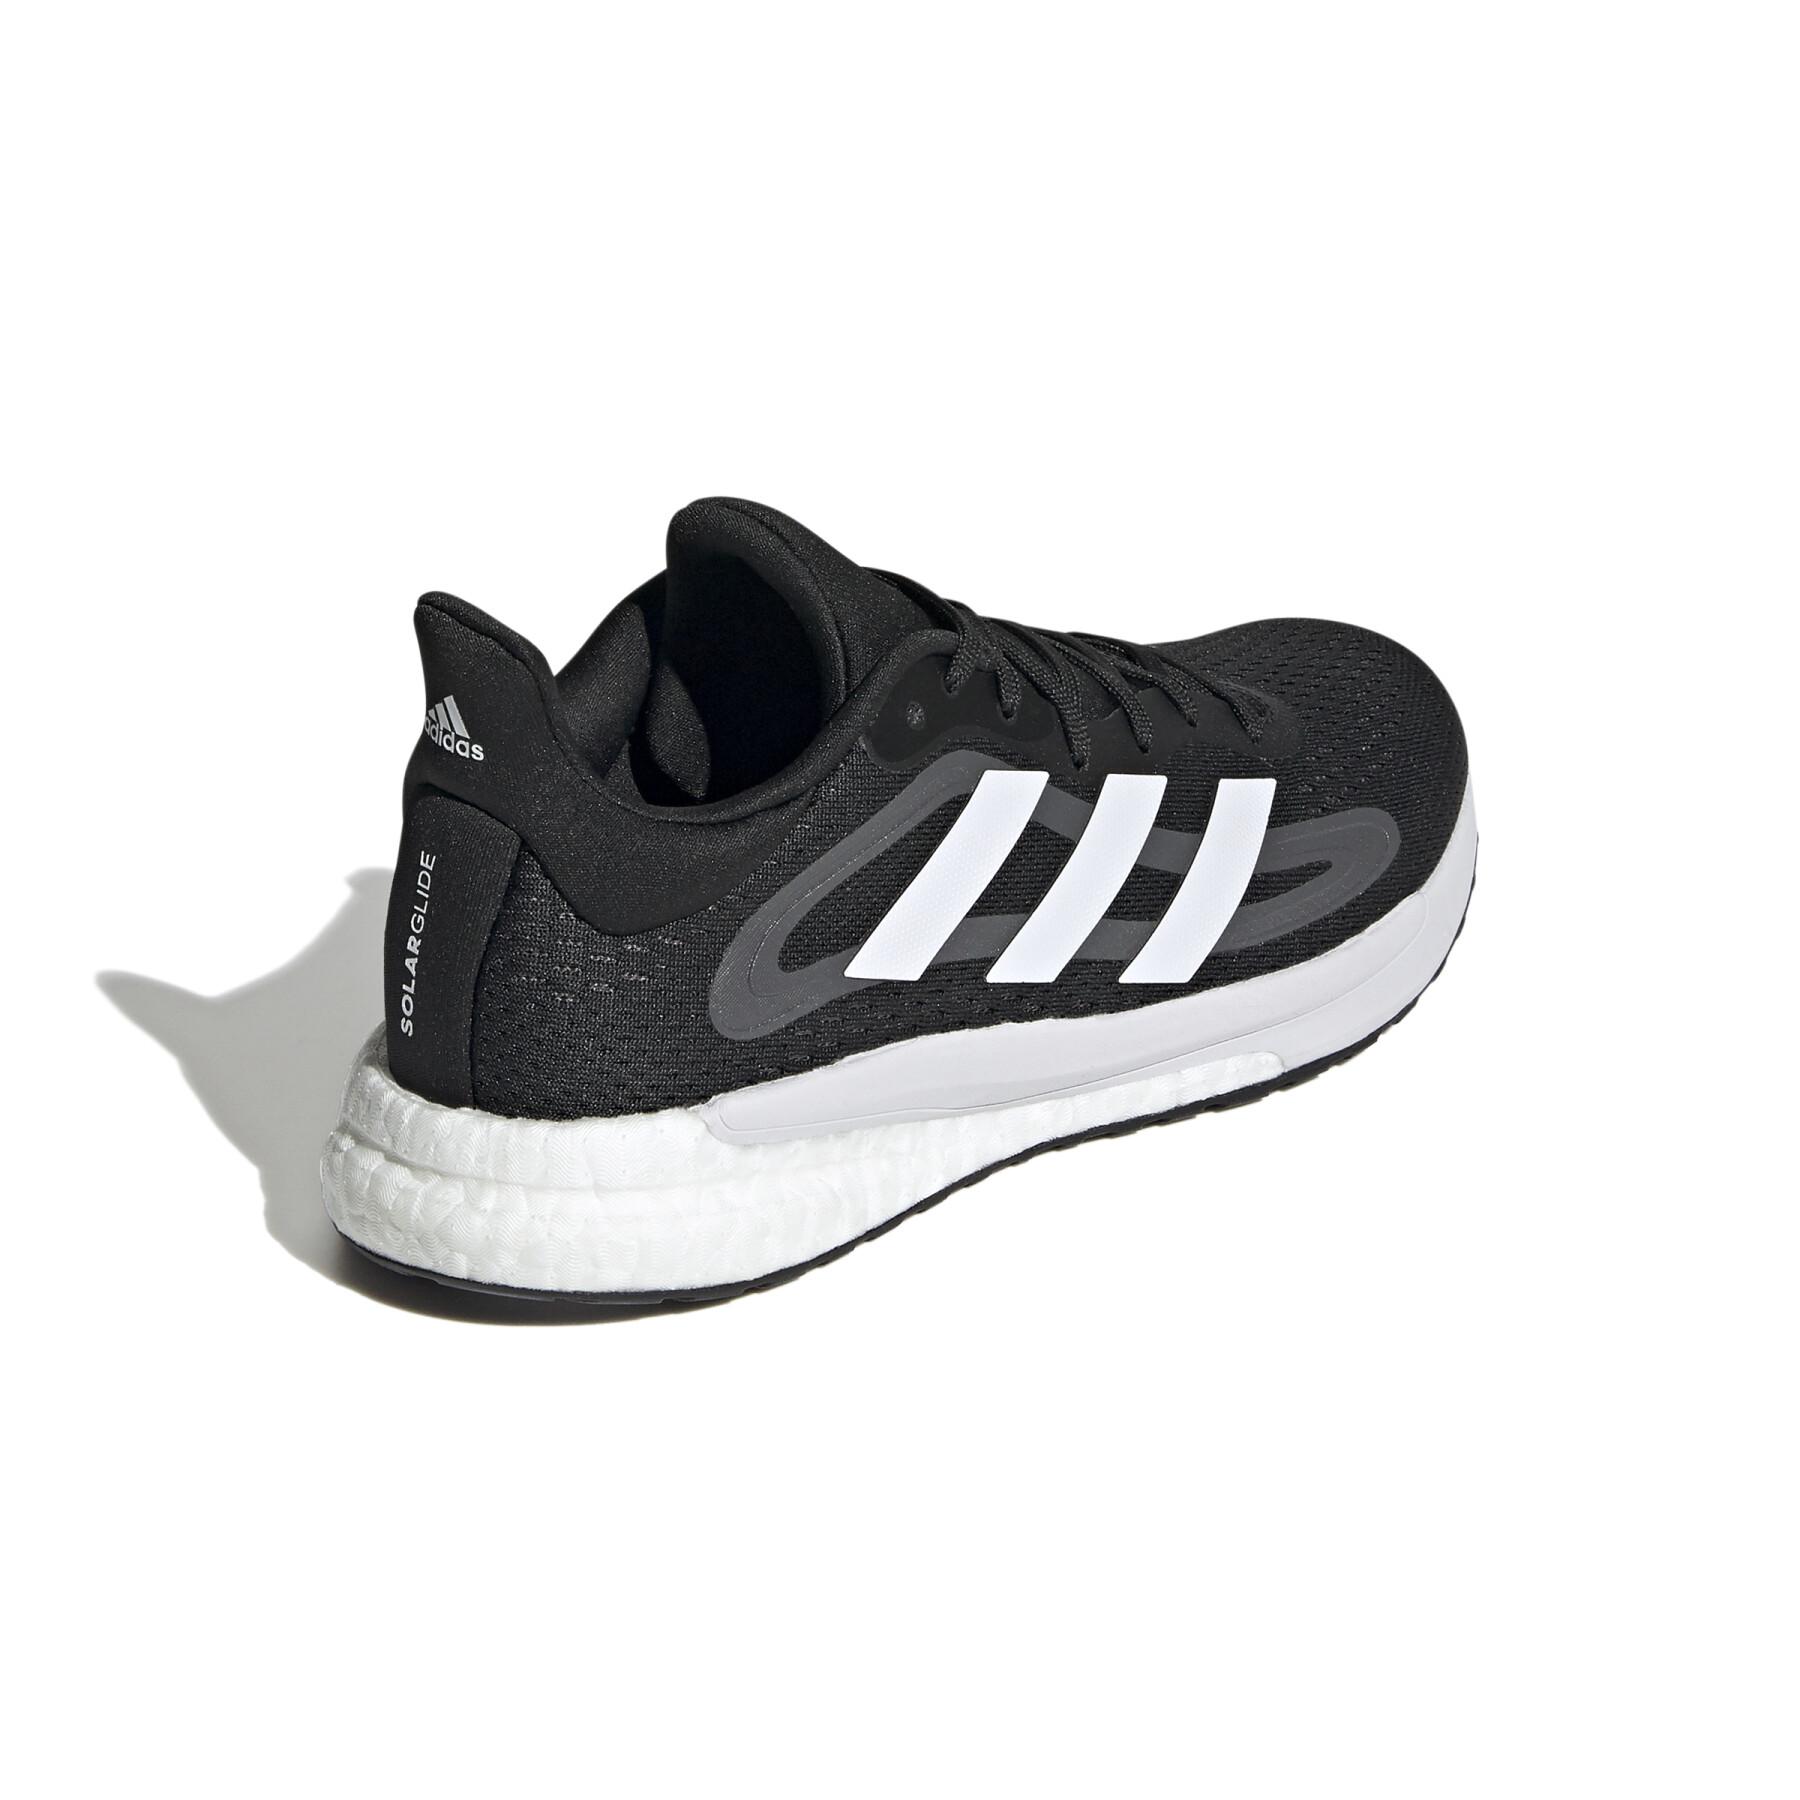 Chaussures de running femme adidas SolarGlide 4 ST